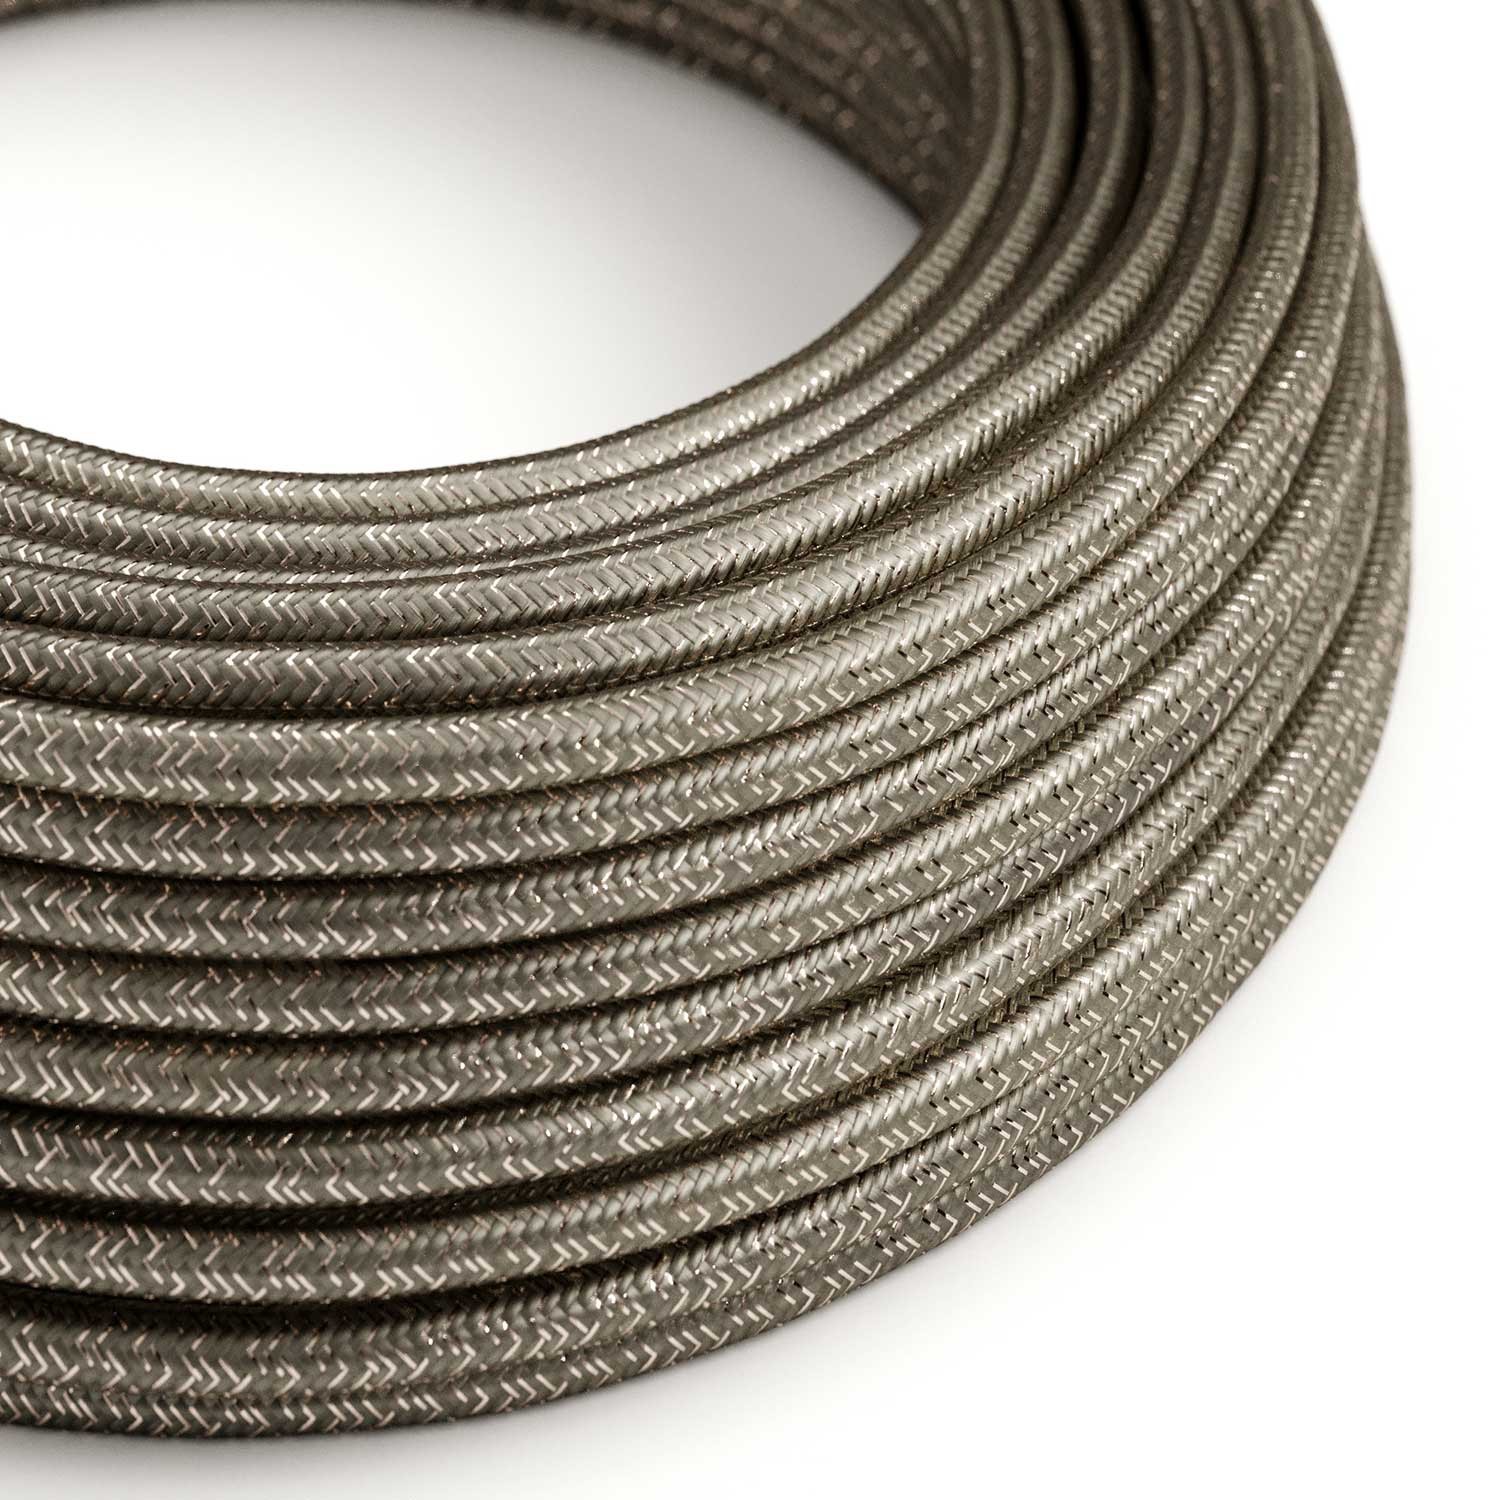 Okrugli blještavi tekstilni električni kabel RL03 - siva